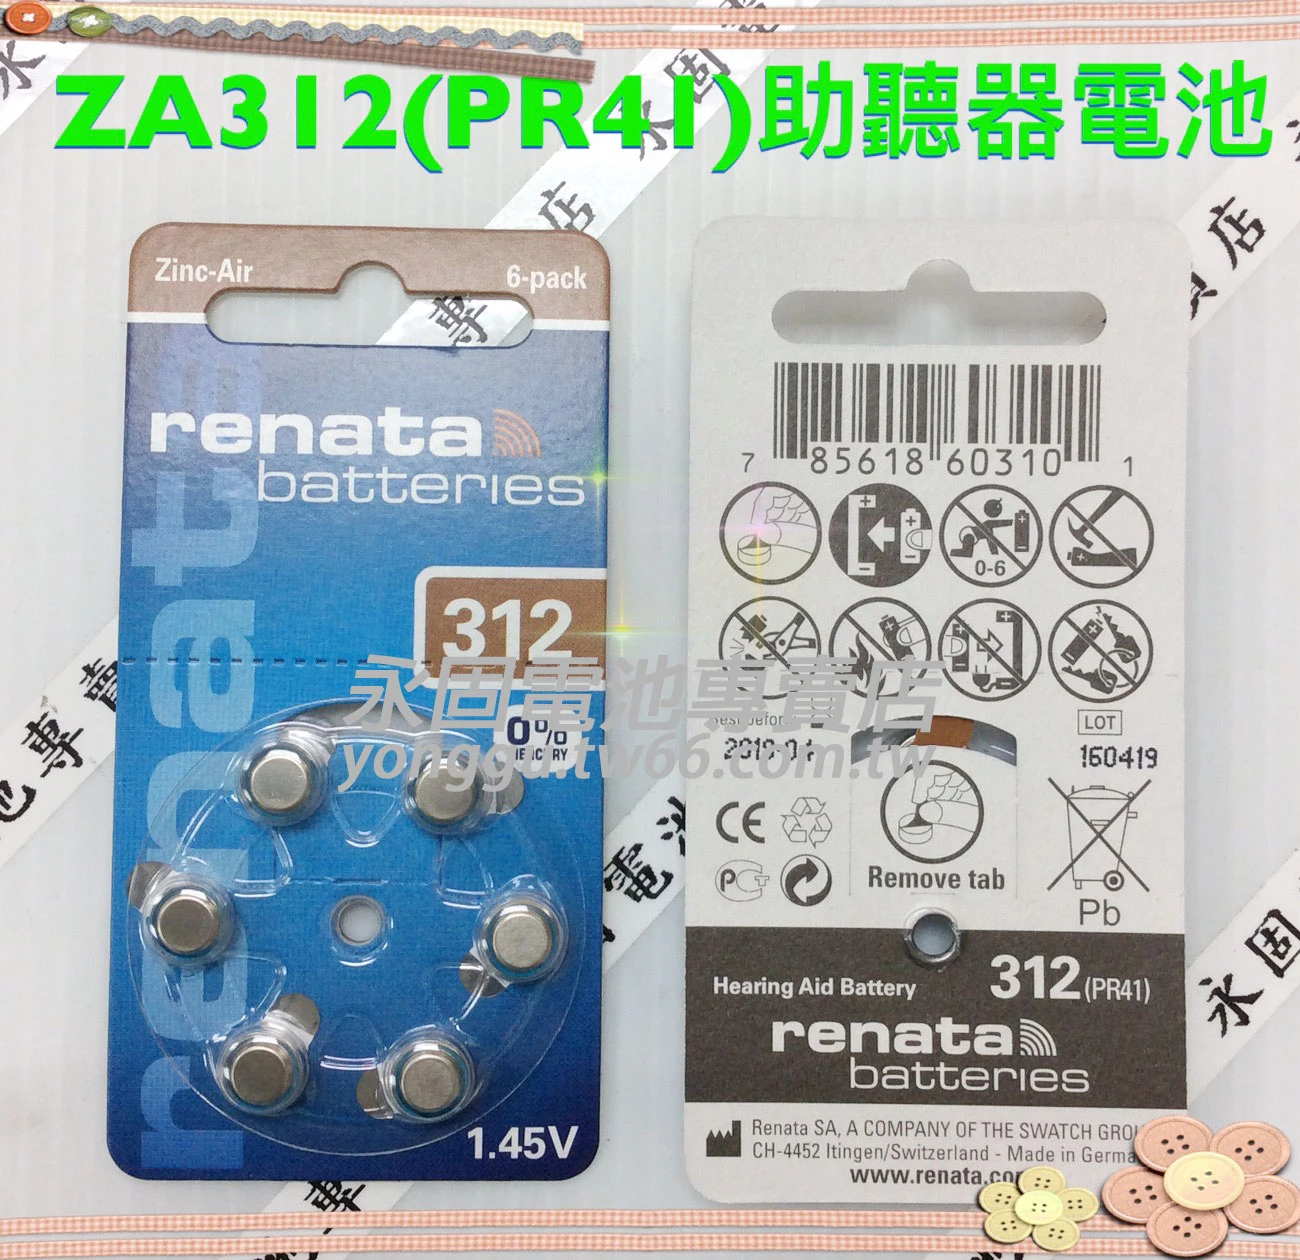 ZA312 PR41助聽器電池-新竹永固電池專賣店